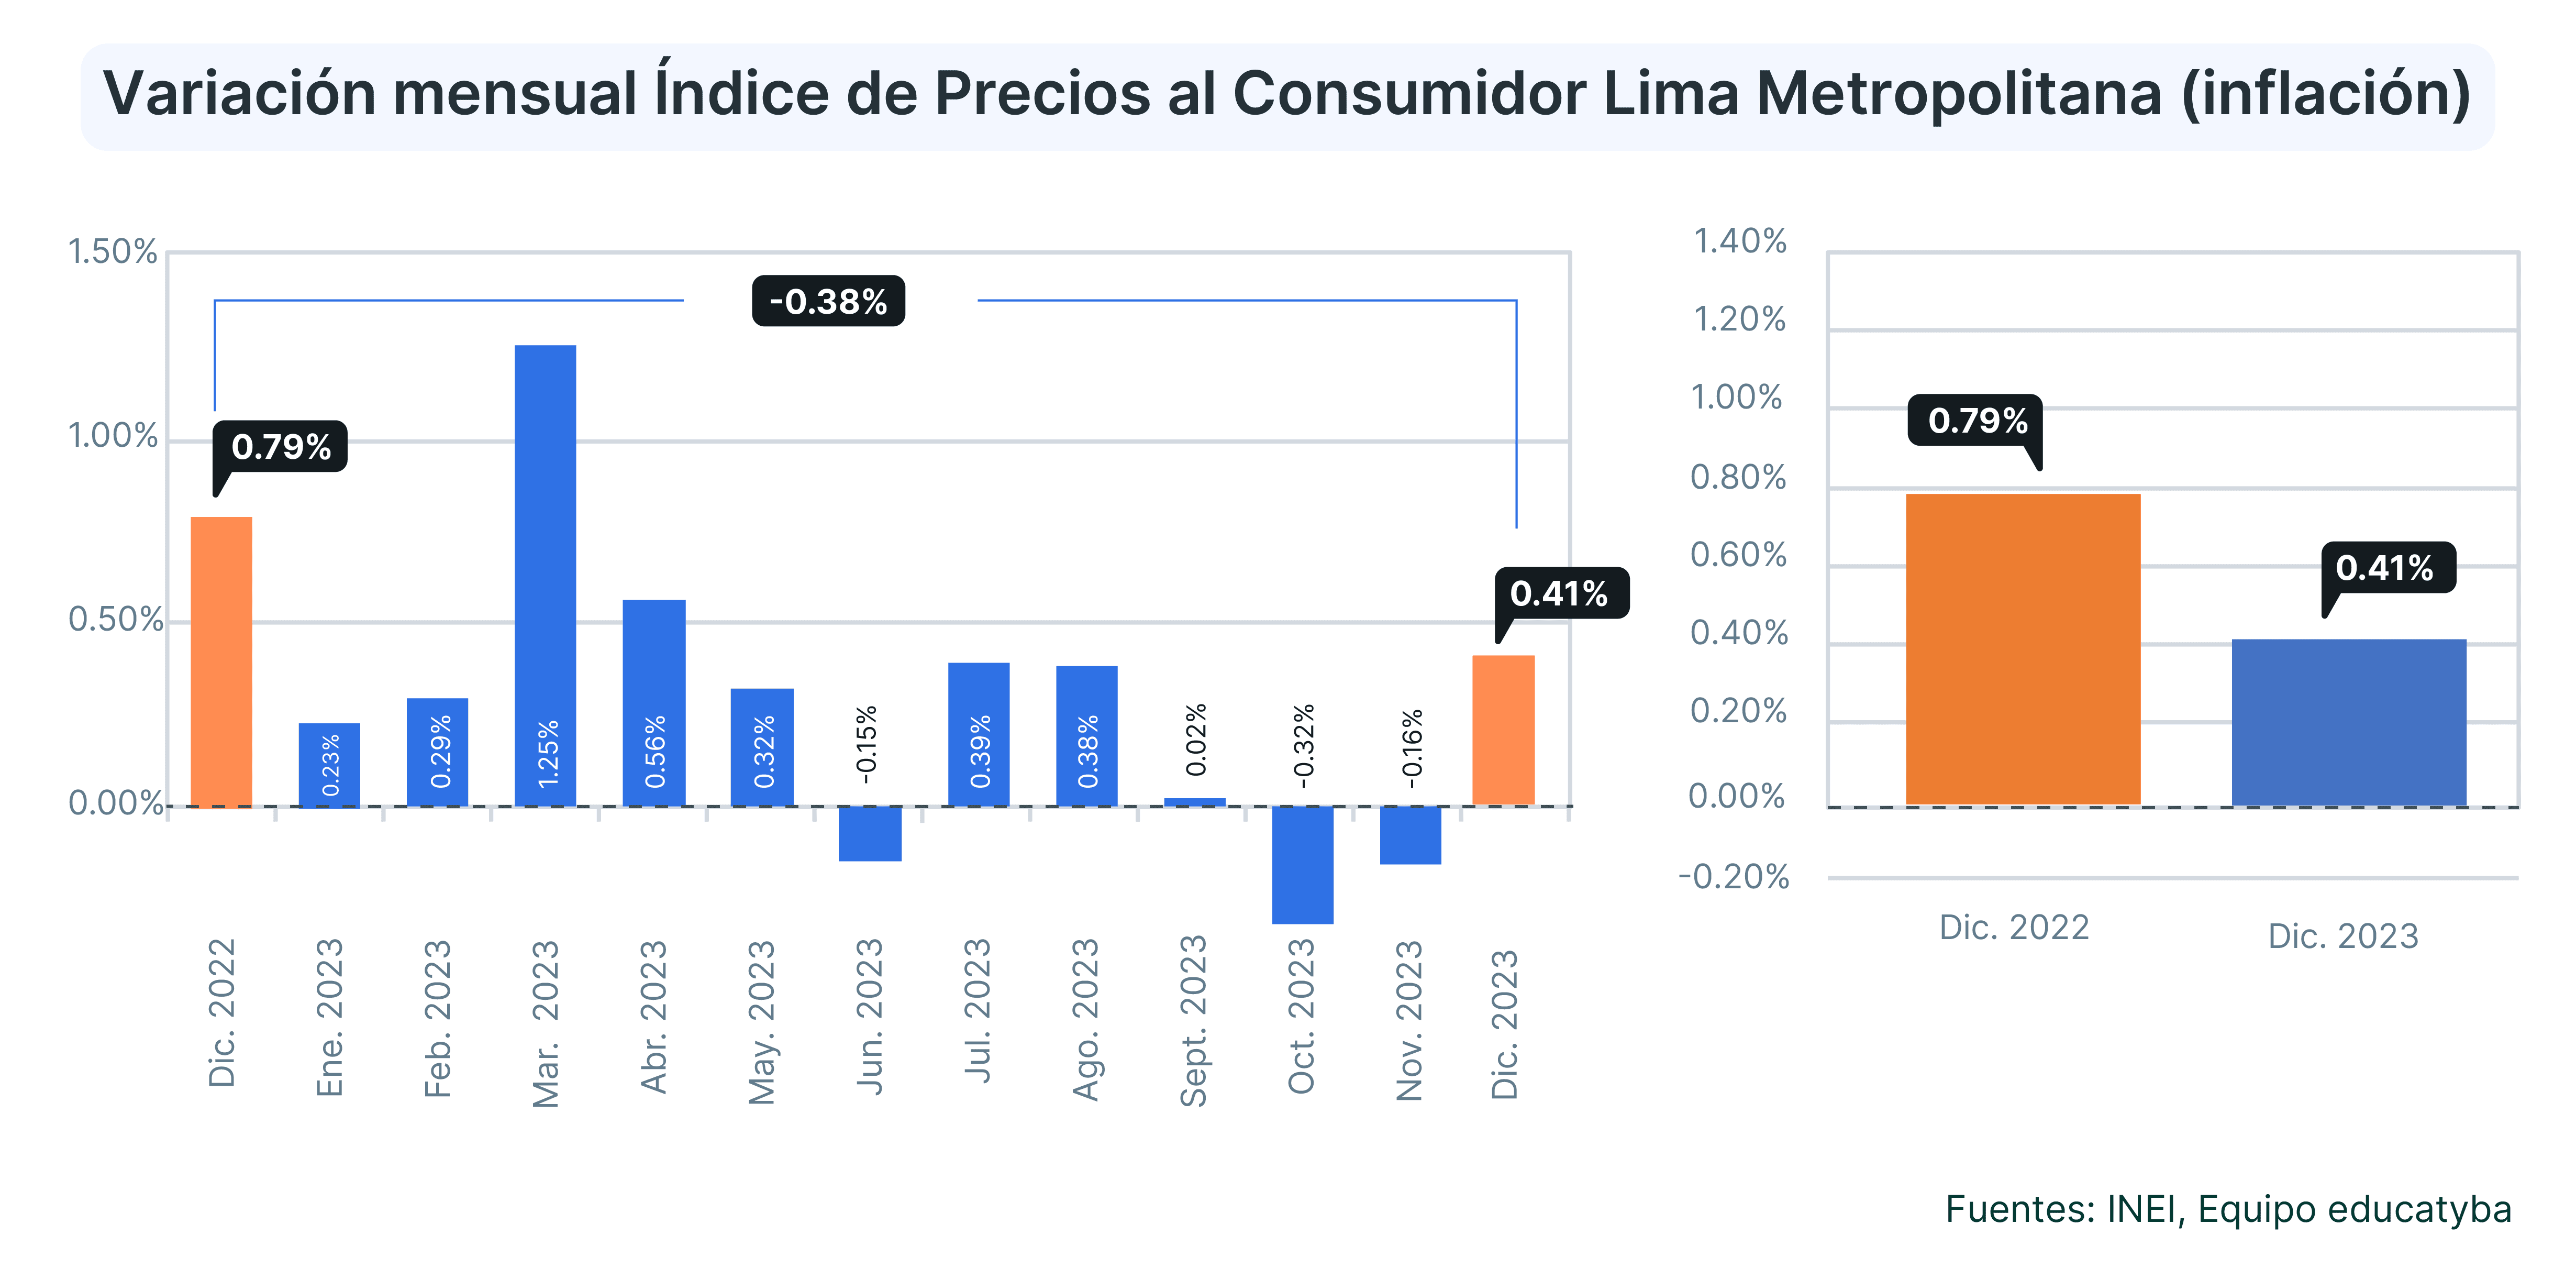 La inflación en el Perú de diciembre 2023: El indicador quedó a solo 0.24 pp de la meta